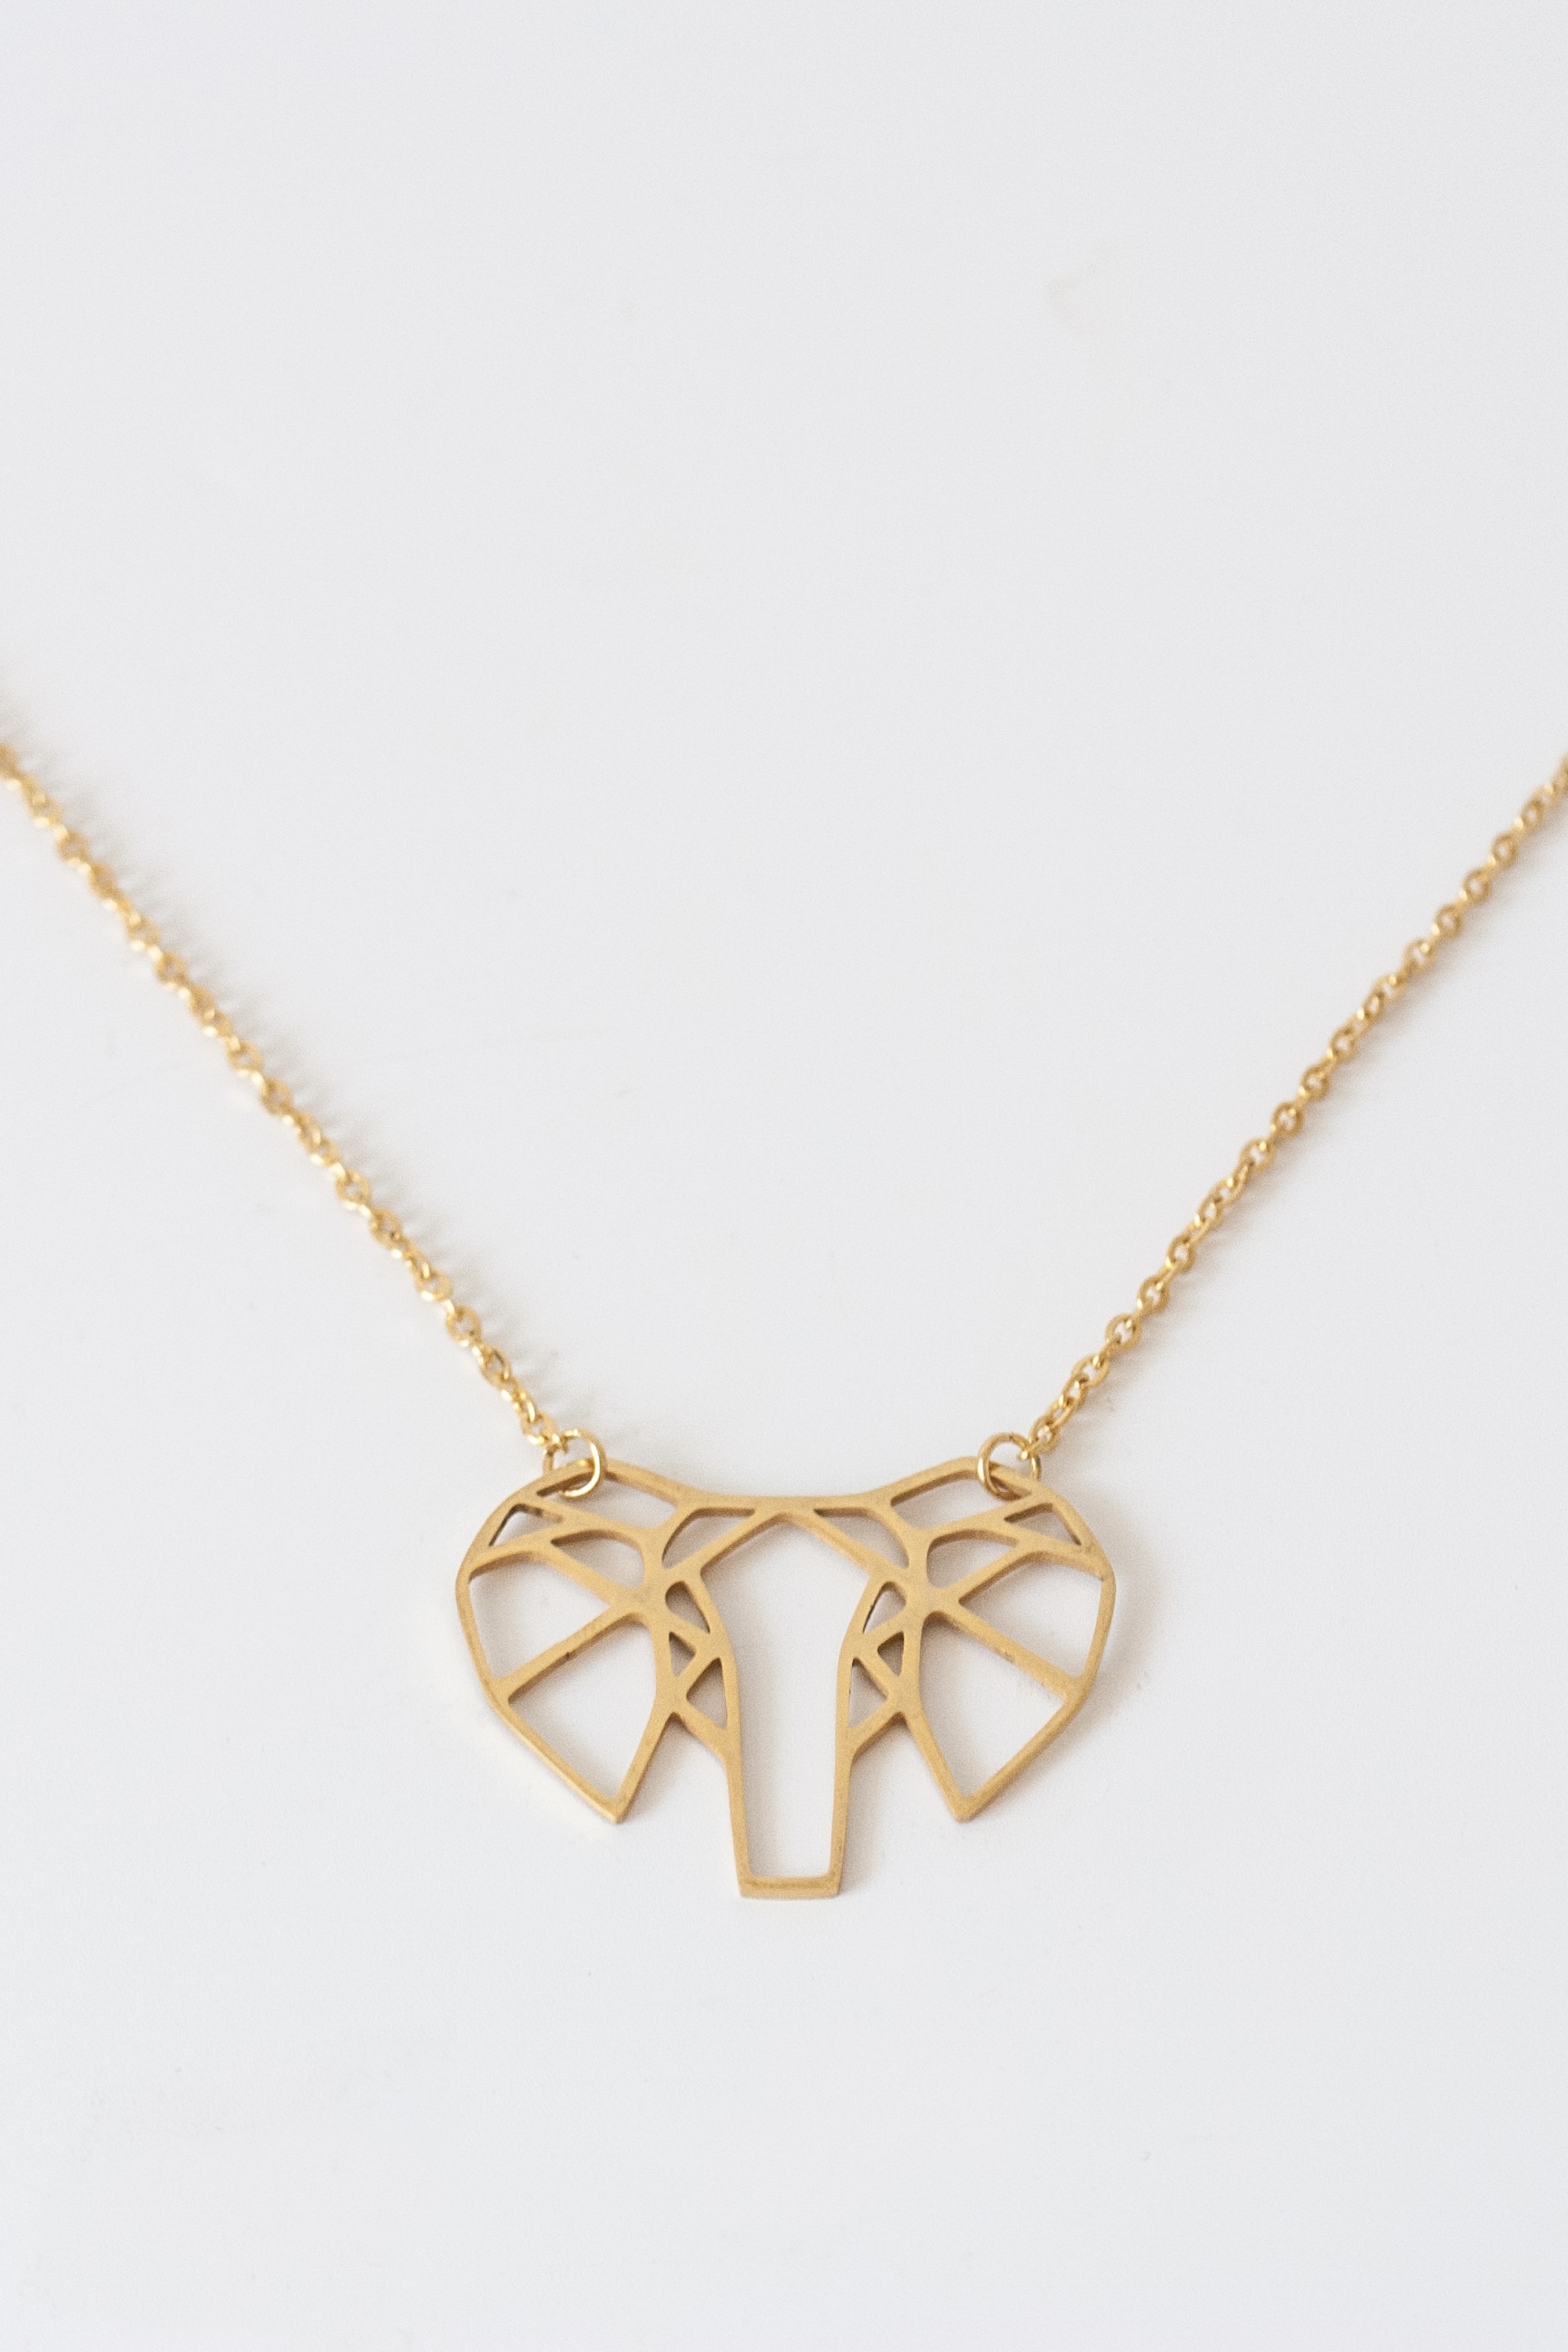  Origami Elephant Necklace